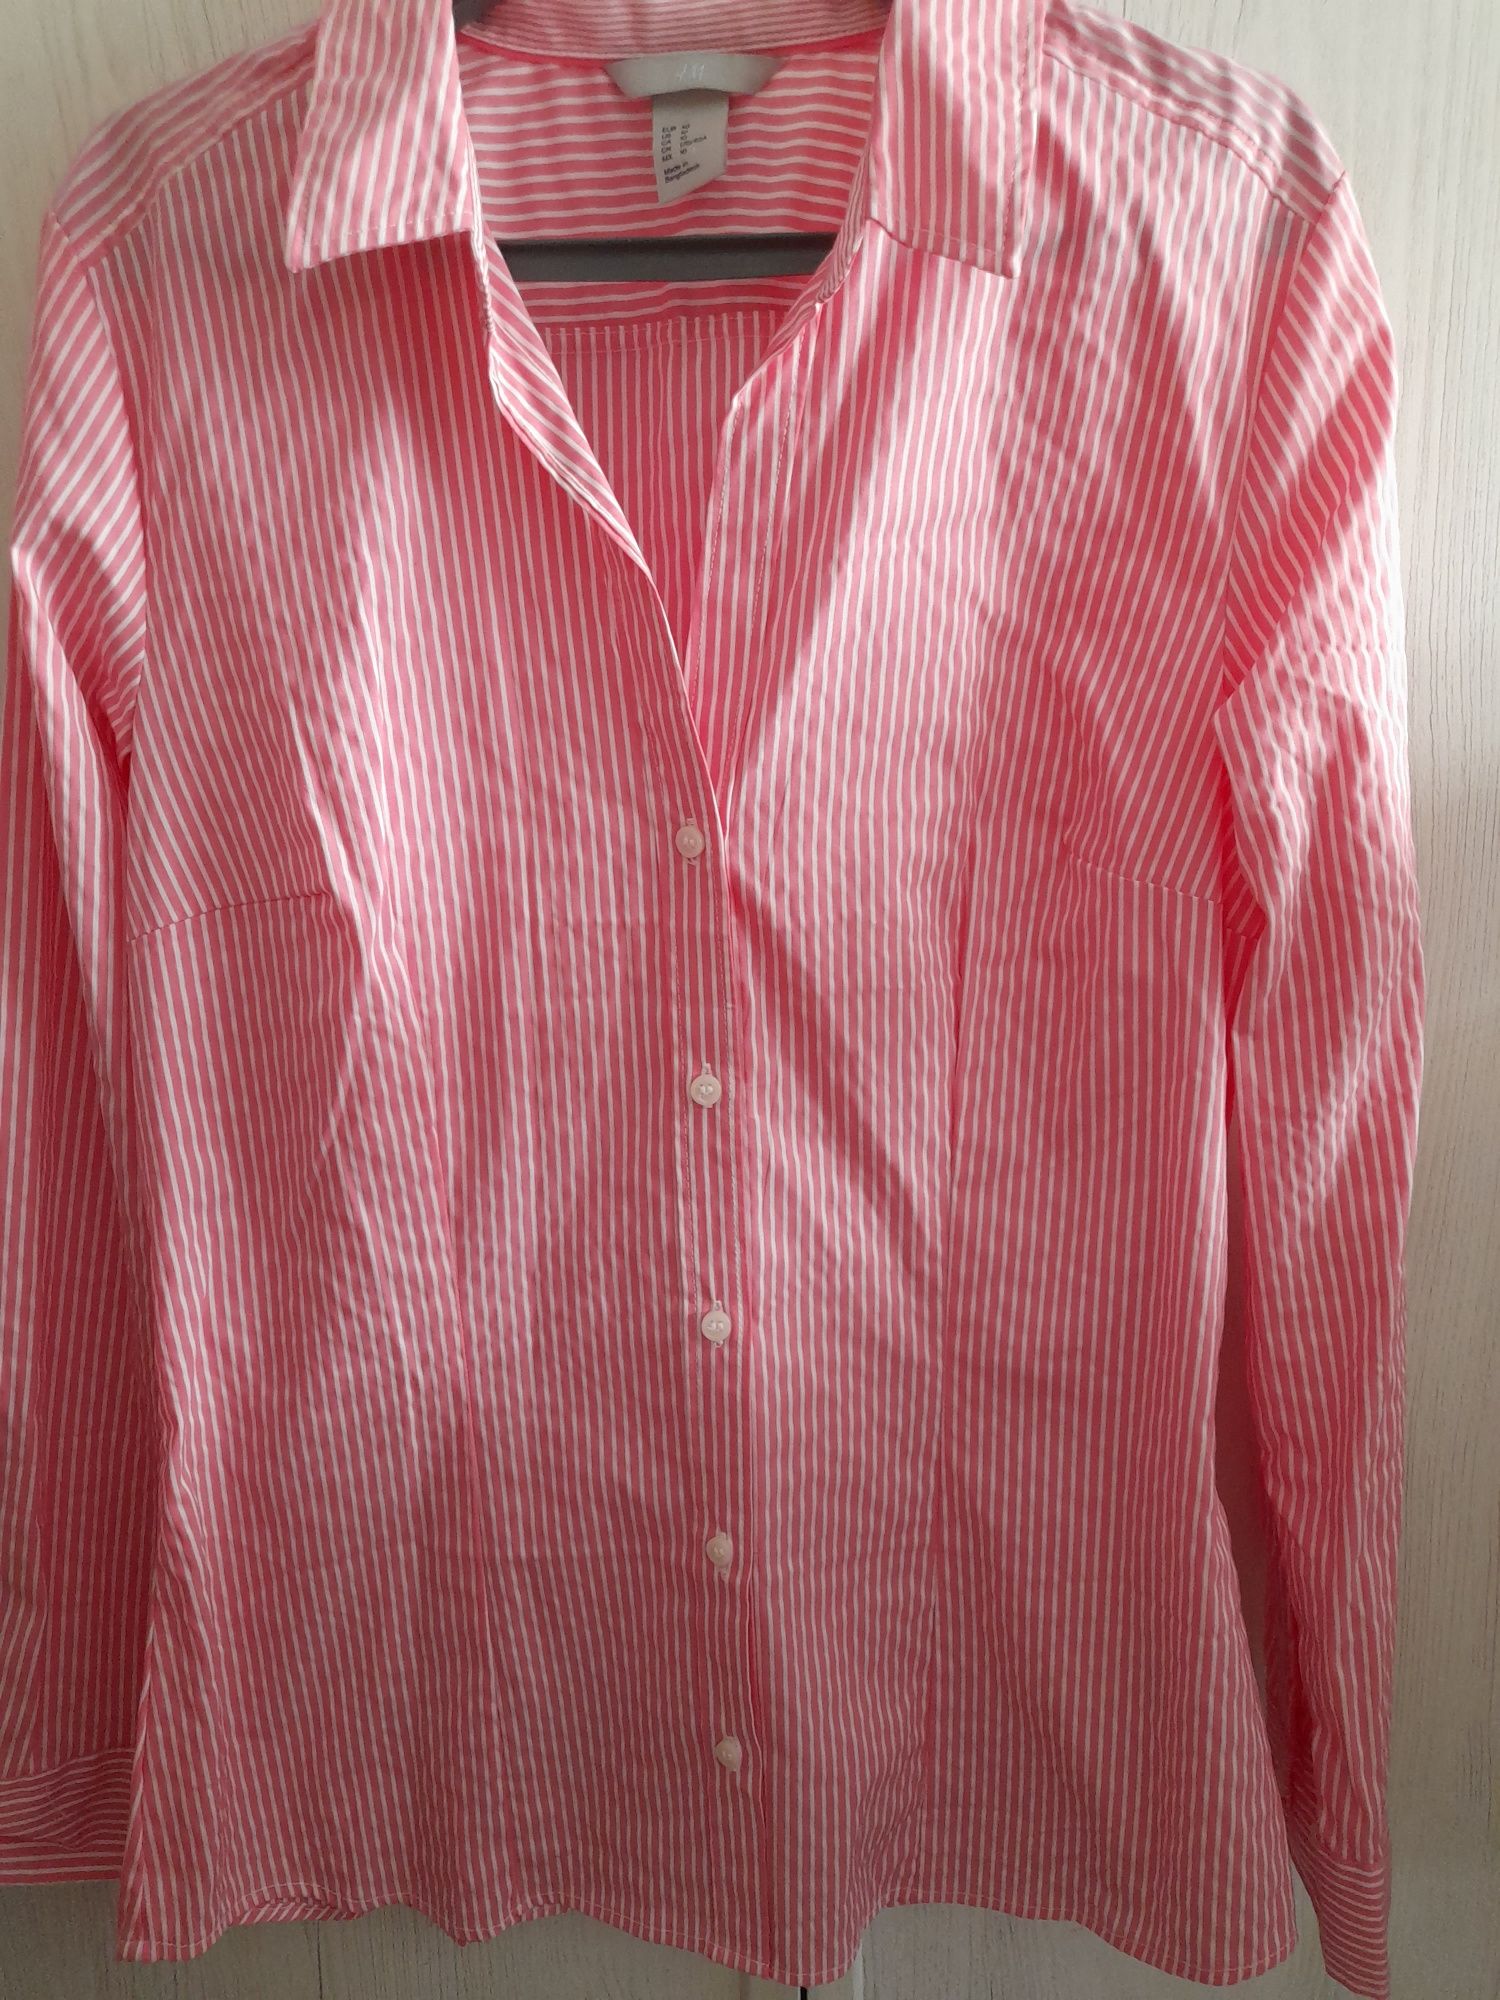 Koszula różowa damska w prążki z długim rękawkiem 40 H&M